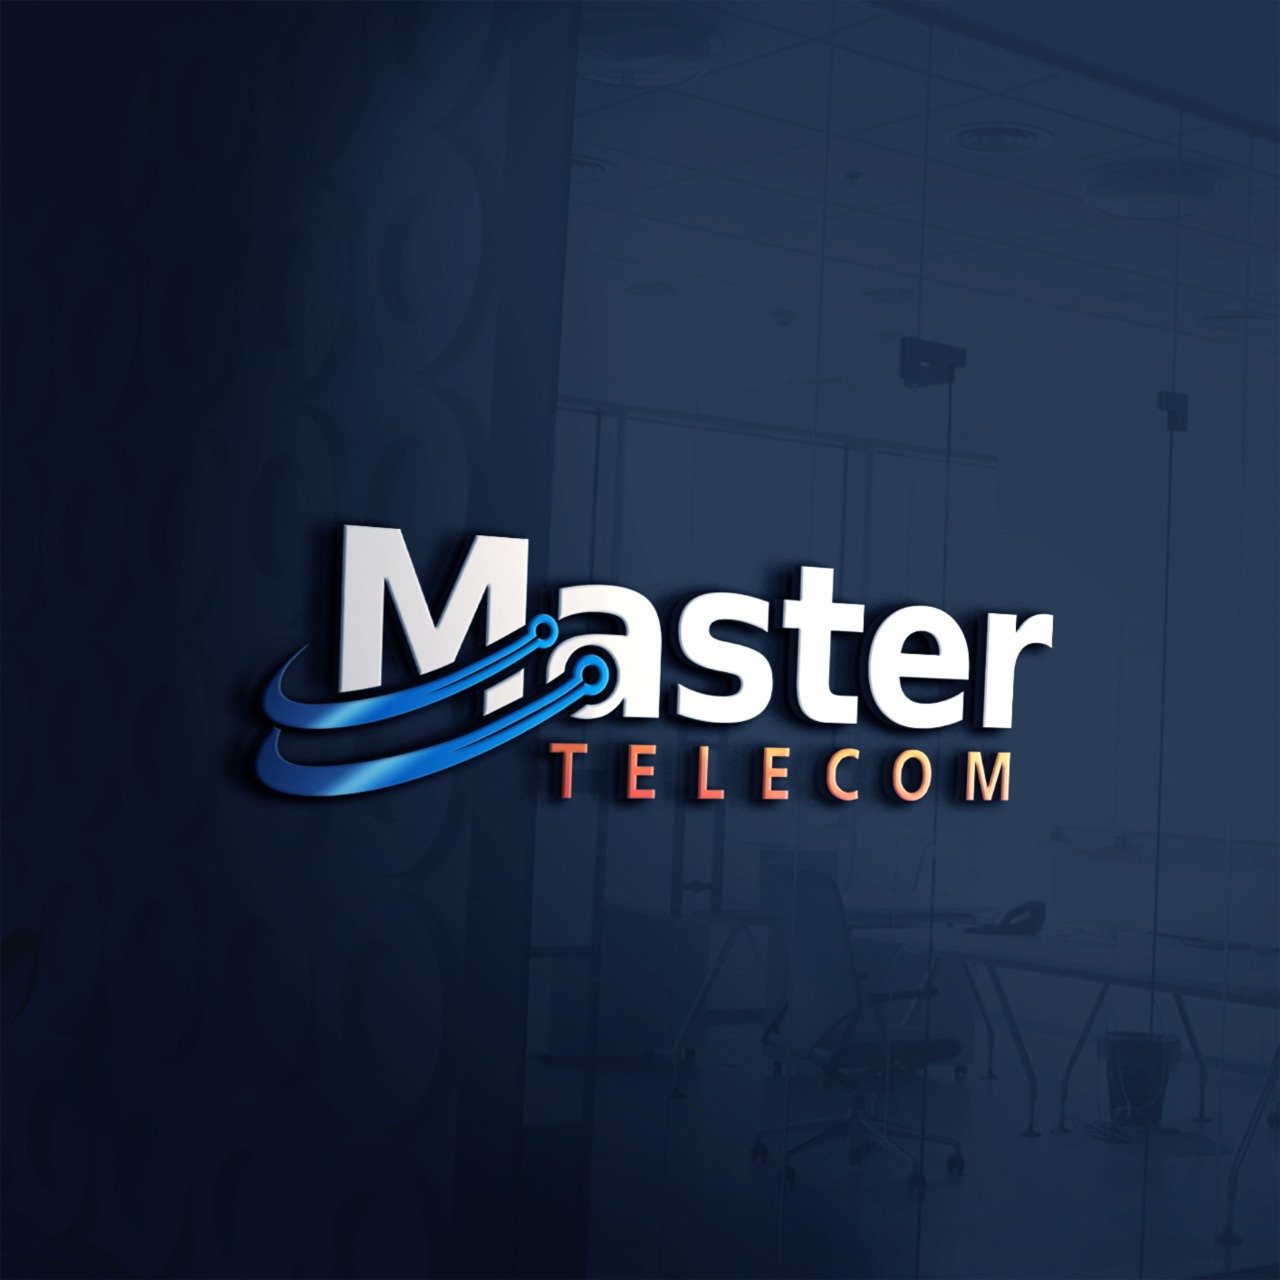 Master Telecom